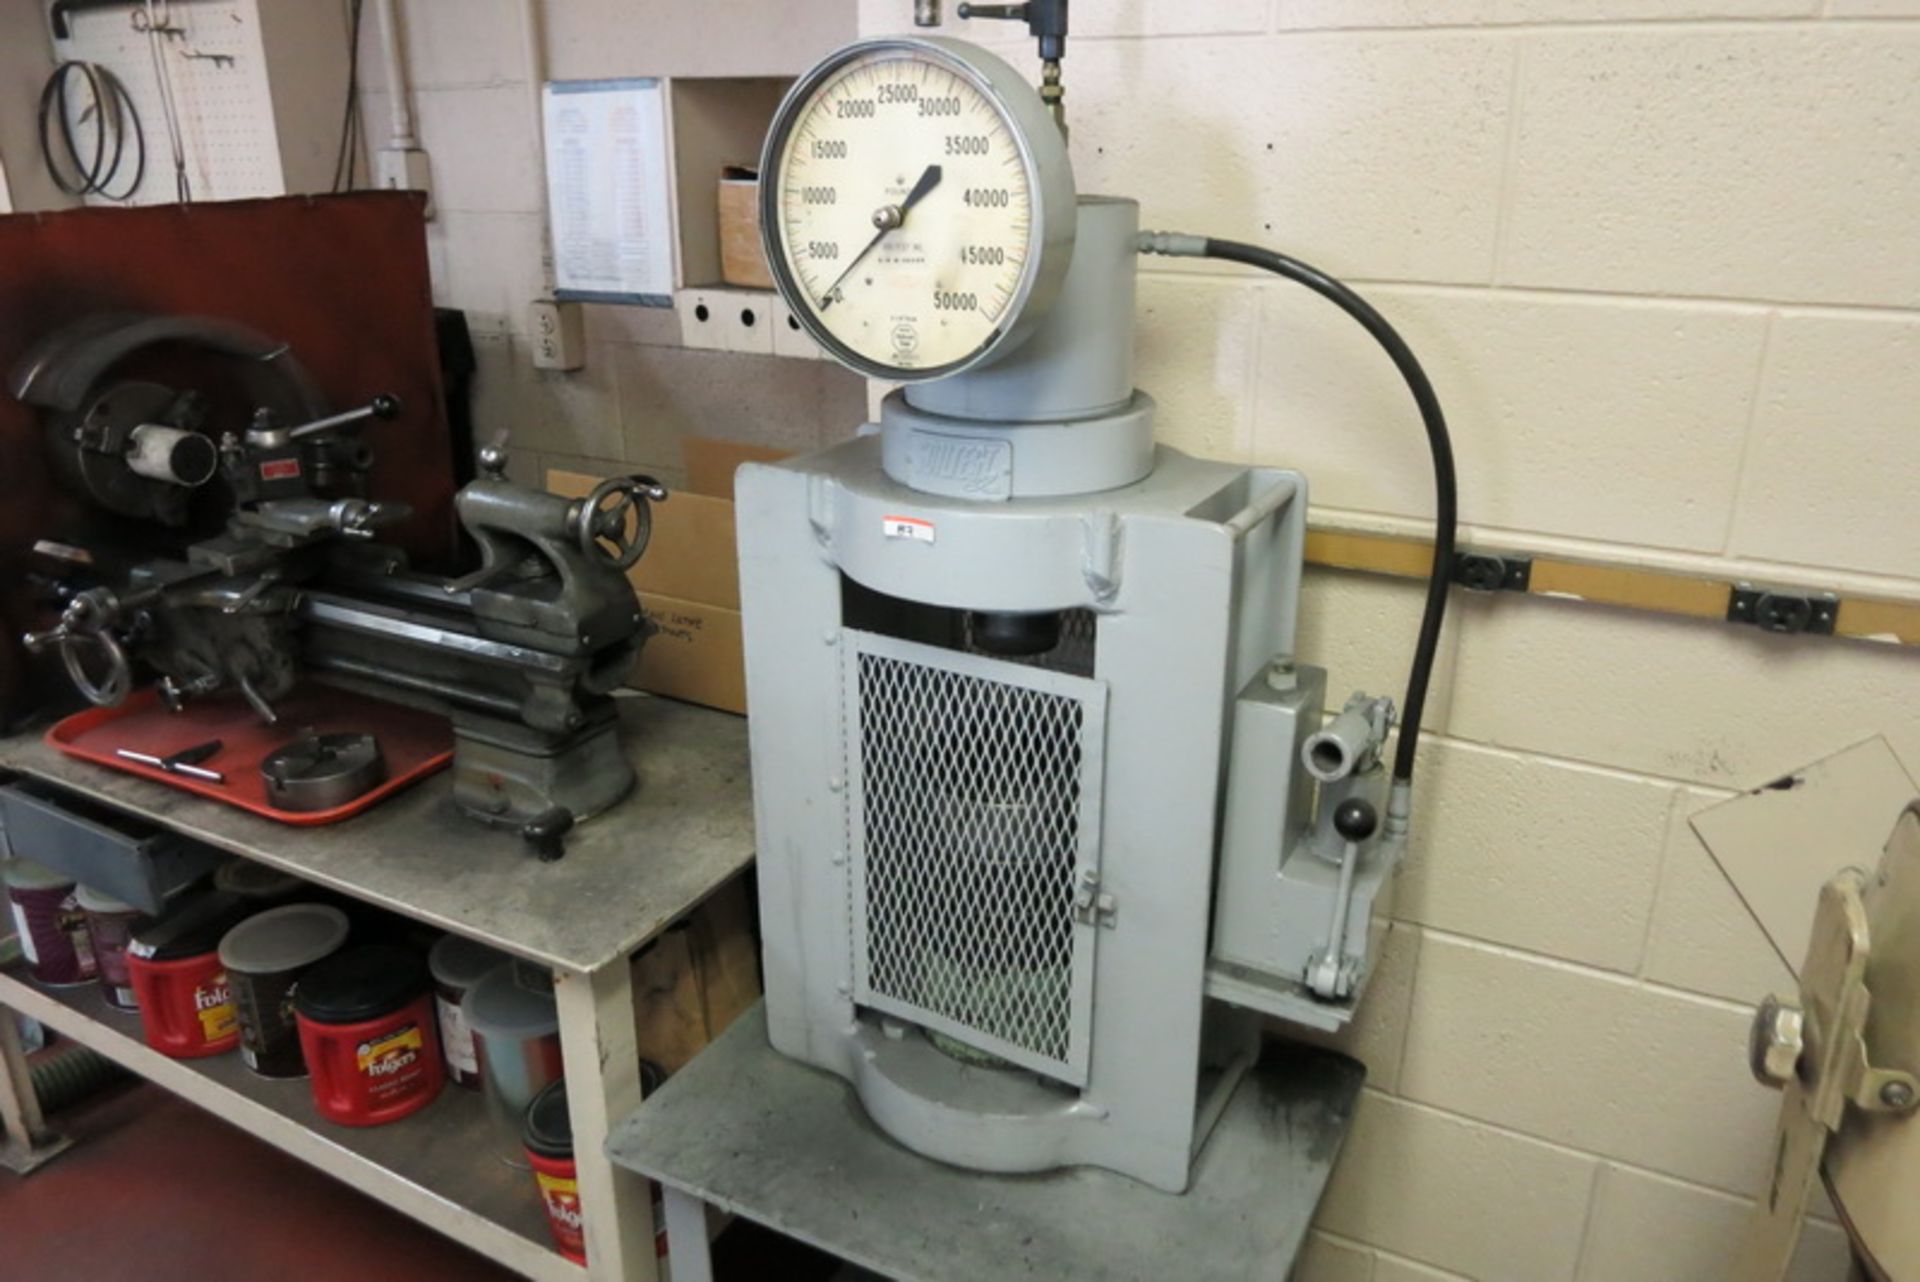 Soiltest hydraulic press